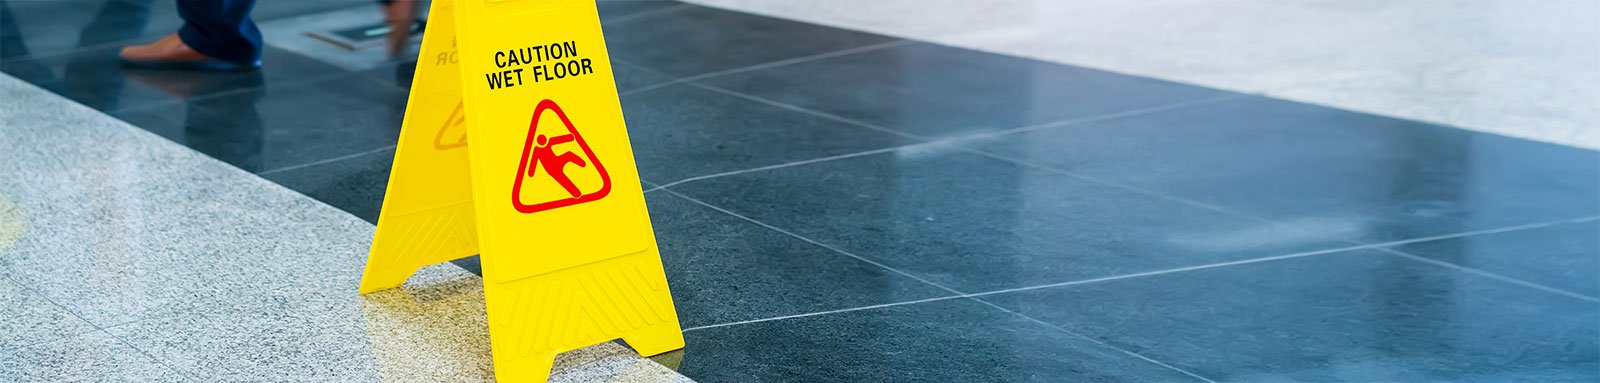 Wet floor caution sign on office floor